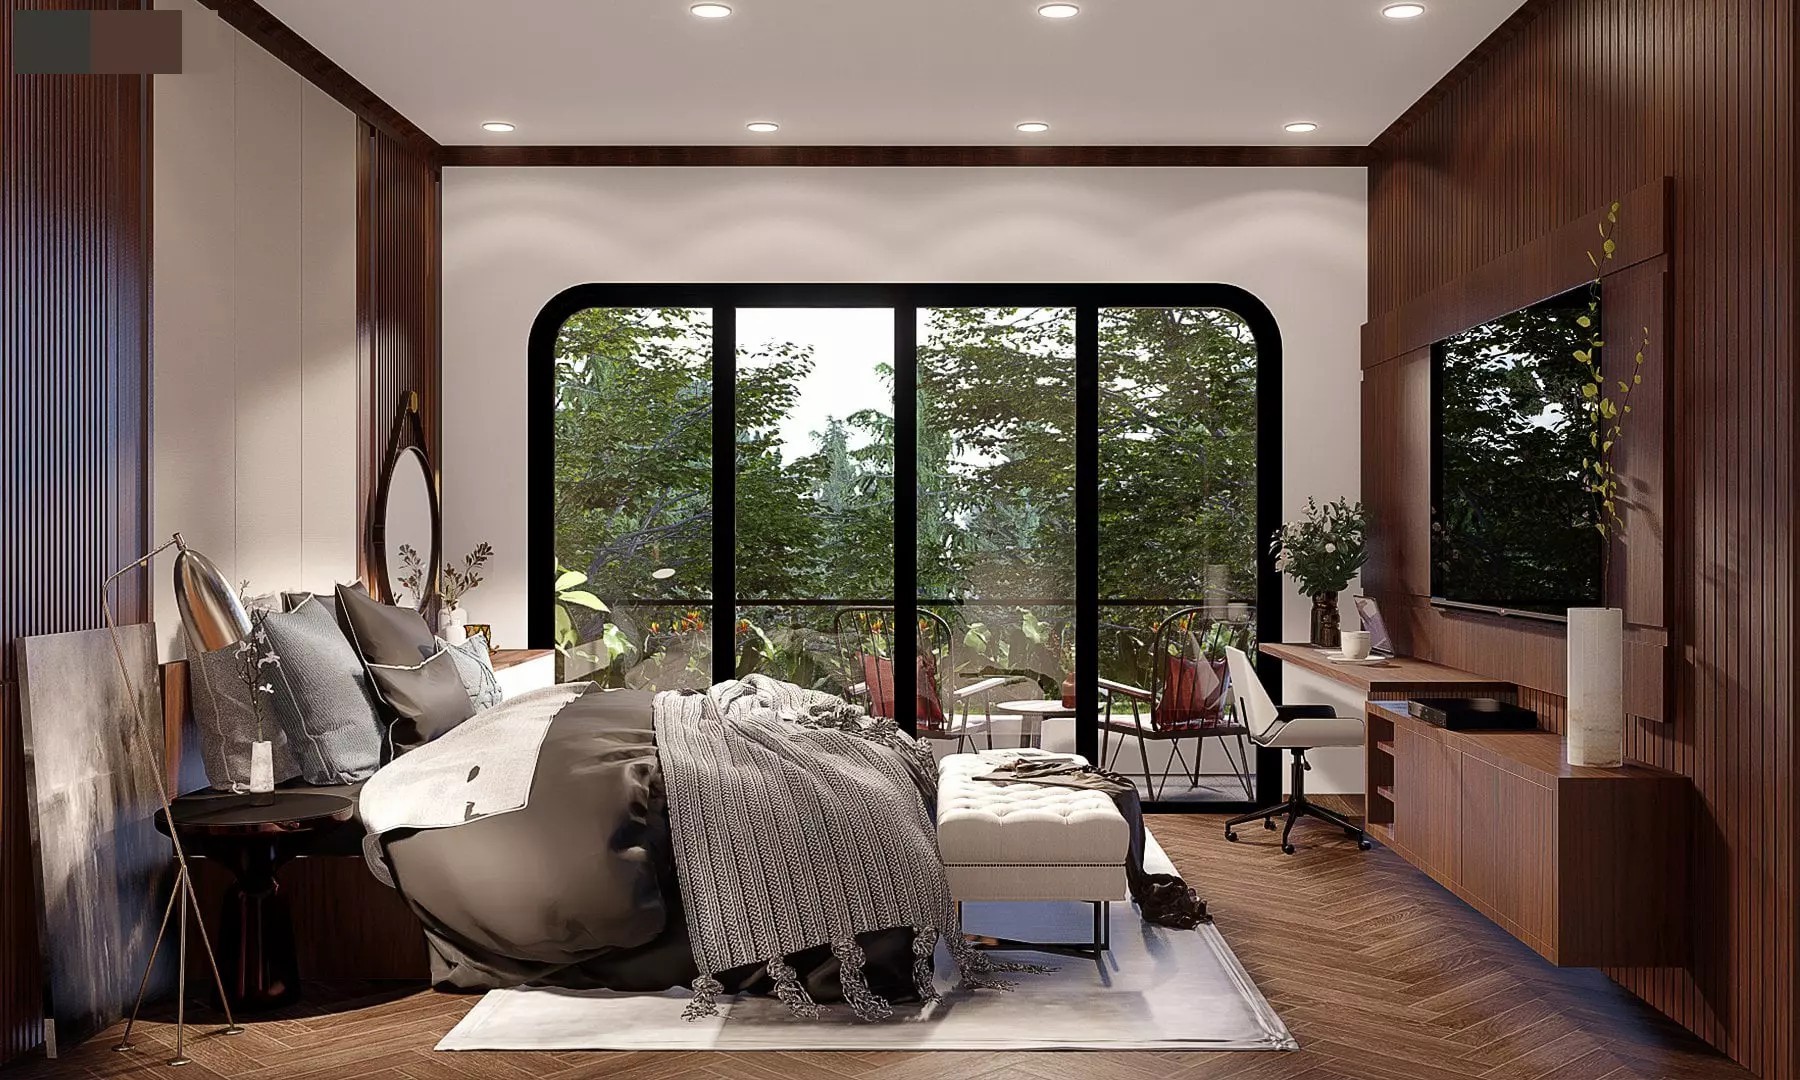 
Phòng ngủ thoáng sáng tự nhiên, giúp mang sinh khí và năng lượng tích cực cho không gian nghỉ ngơi của gia chủ
